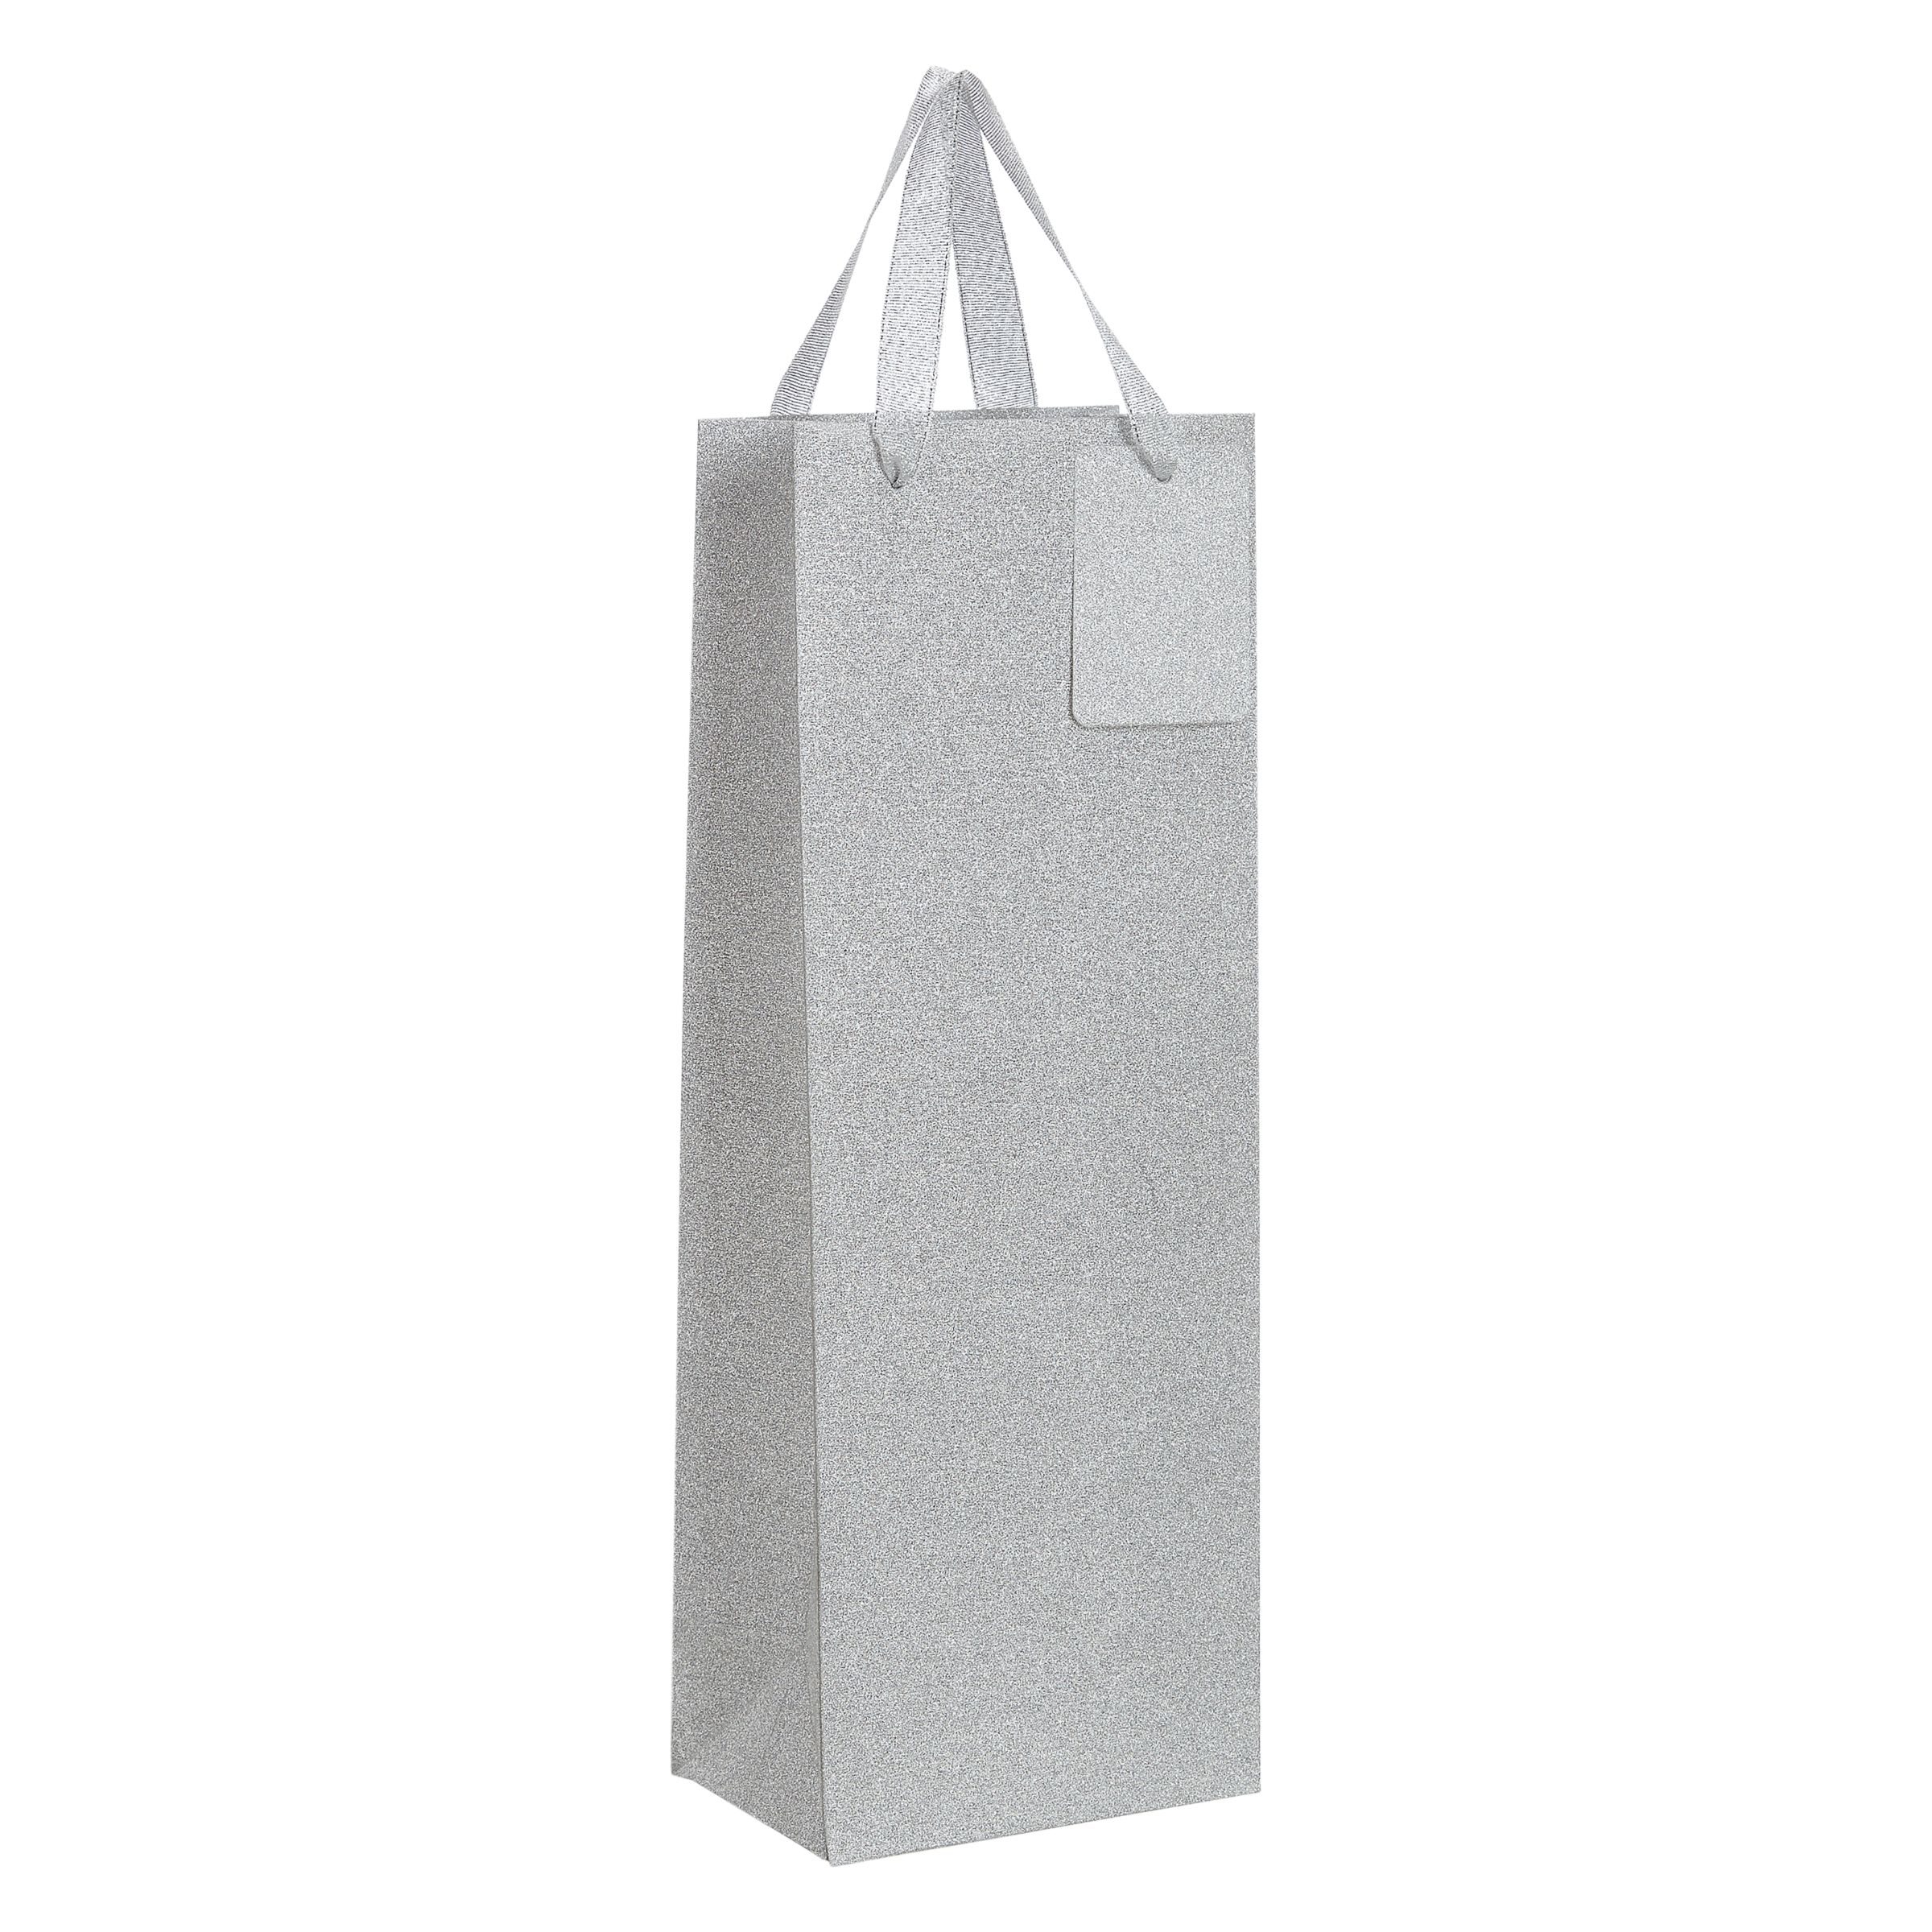 John Lewis & Partners Encapsulated Silver Glitter Gift Bag, Bottle